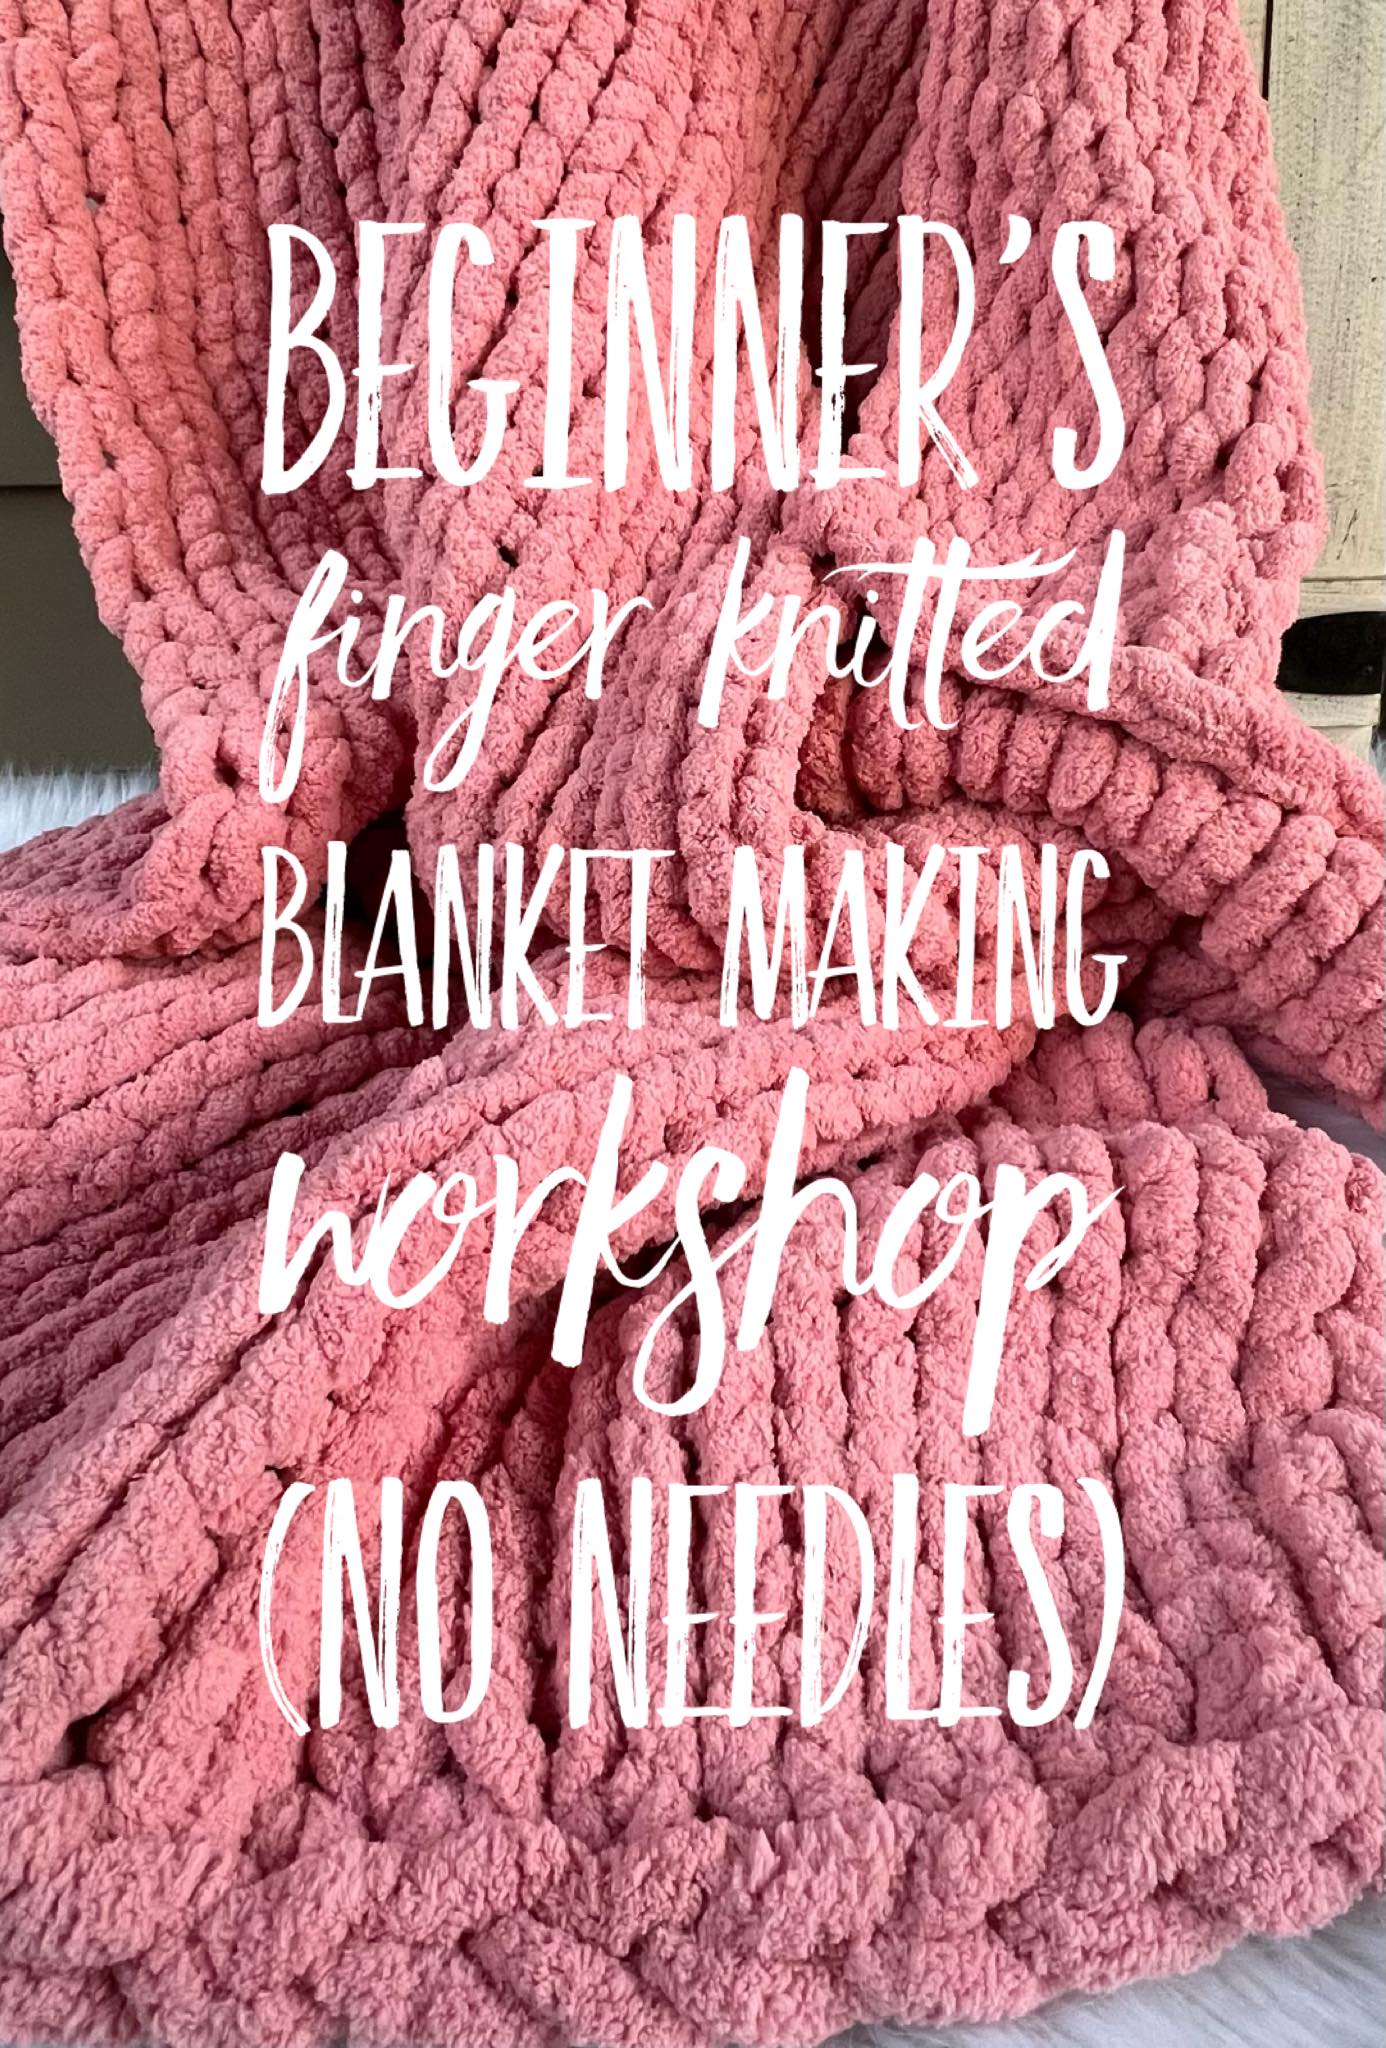 Beginner’s chunky yarn finger knitted blanket workshop 02/17 2:30pm